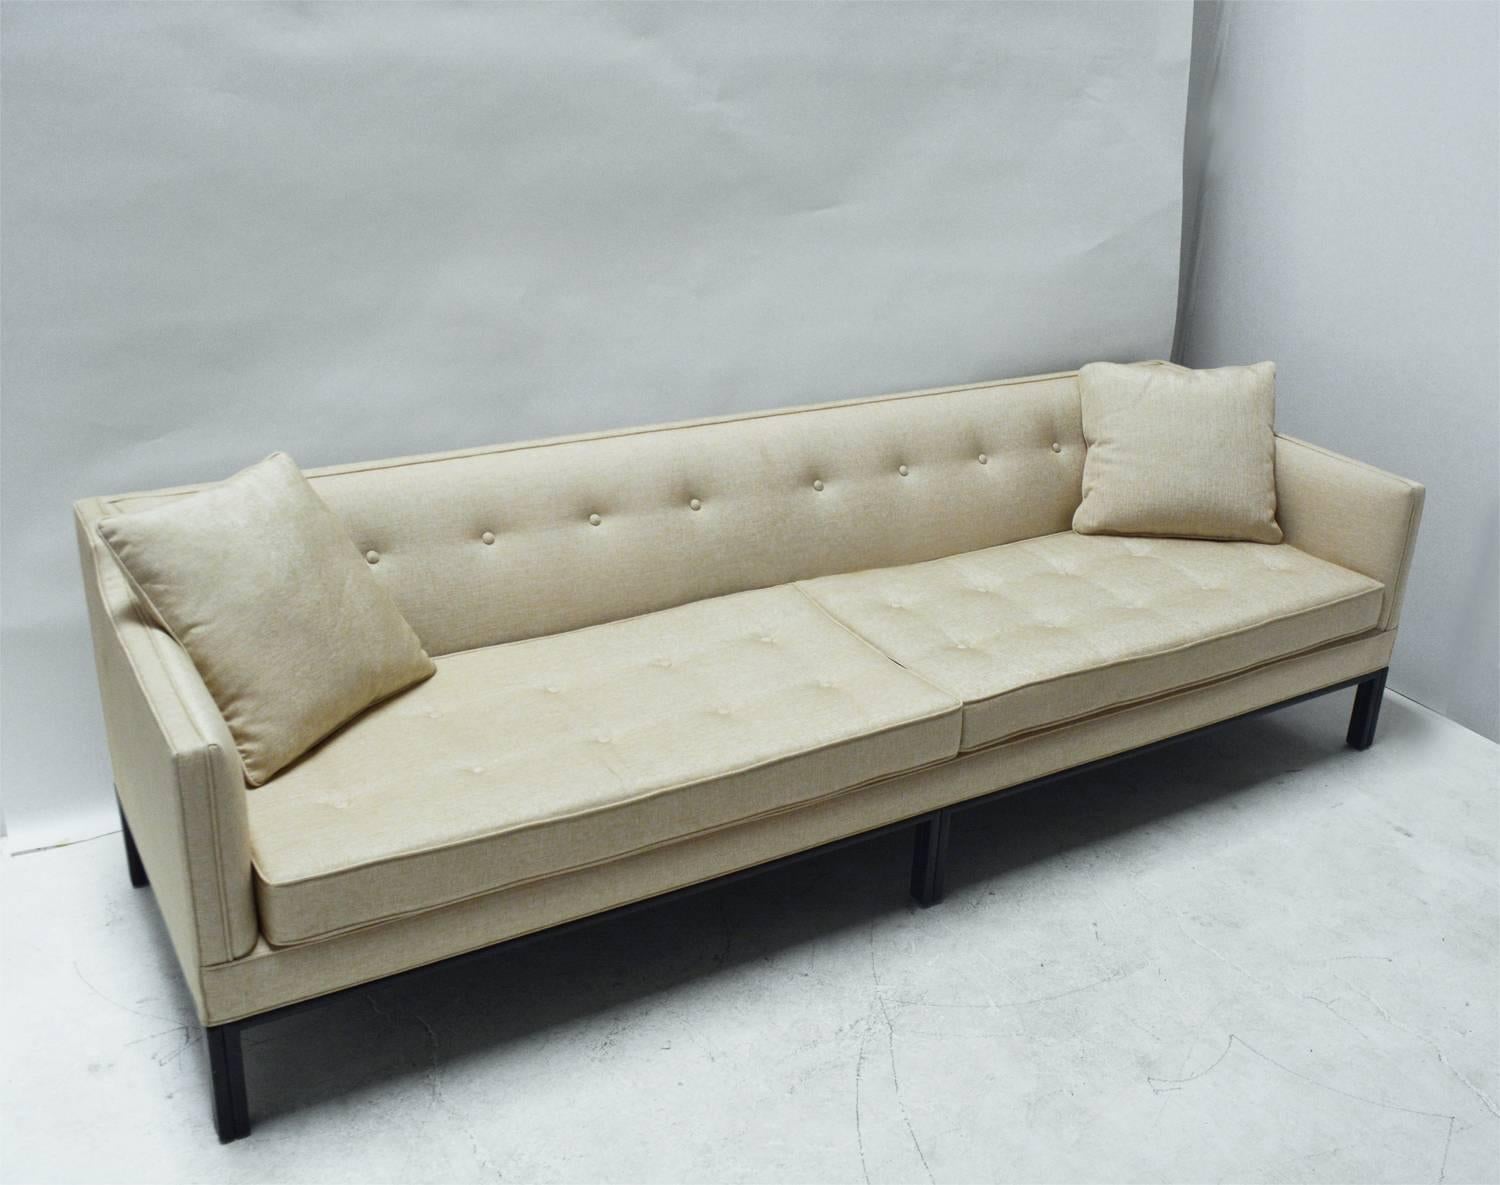 A good sofa by Edward Wormley for Dunbar, with dark walnut base and legs.